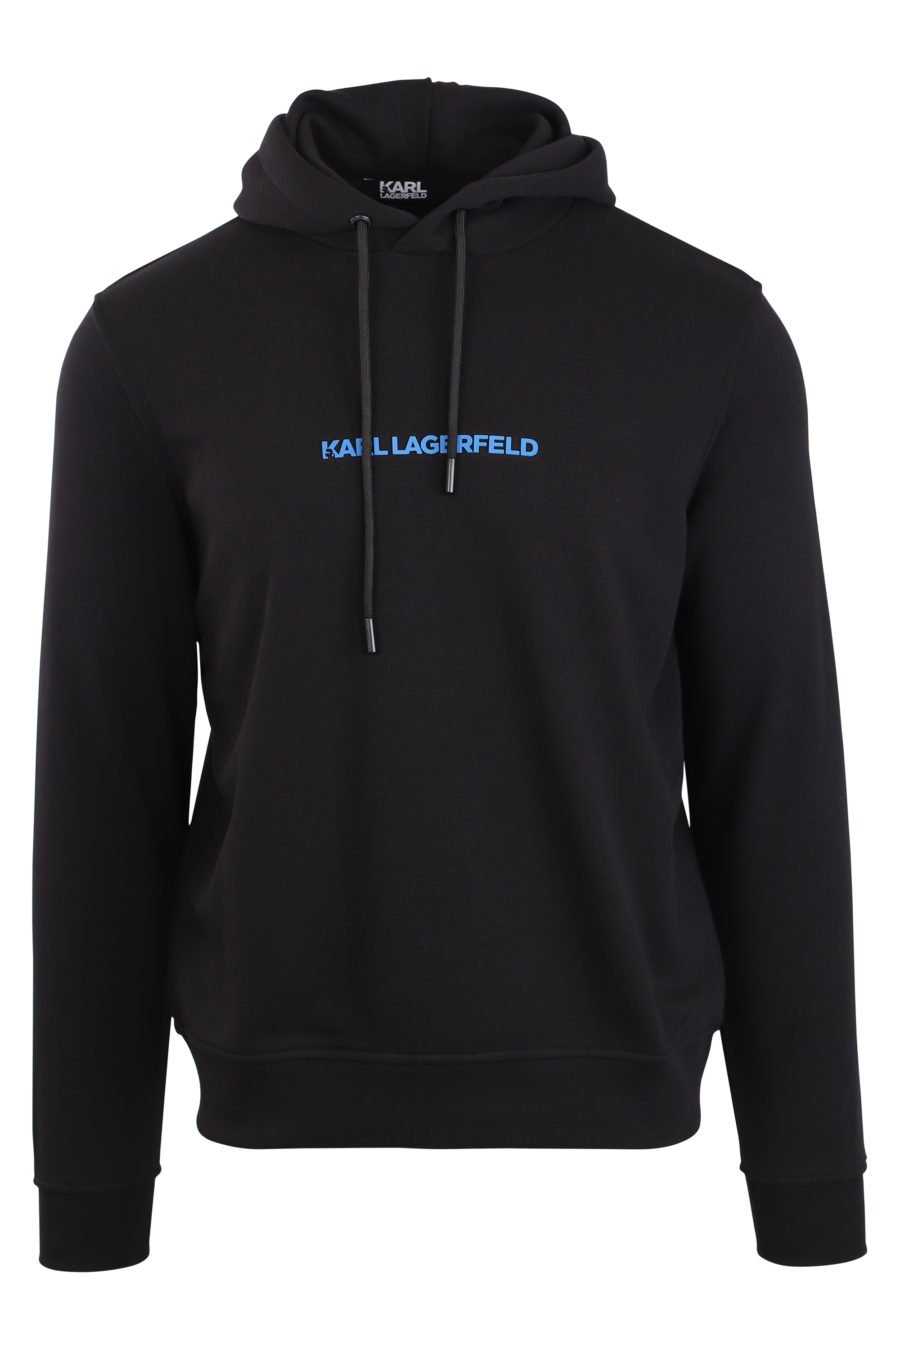 Schwarzes Sweatshirt mit Kapuze und blauem Logo - IMG 0909